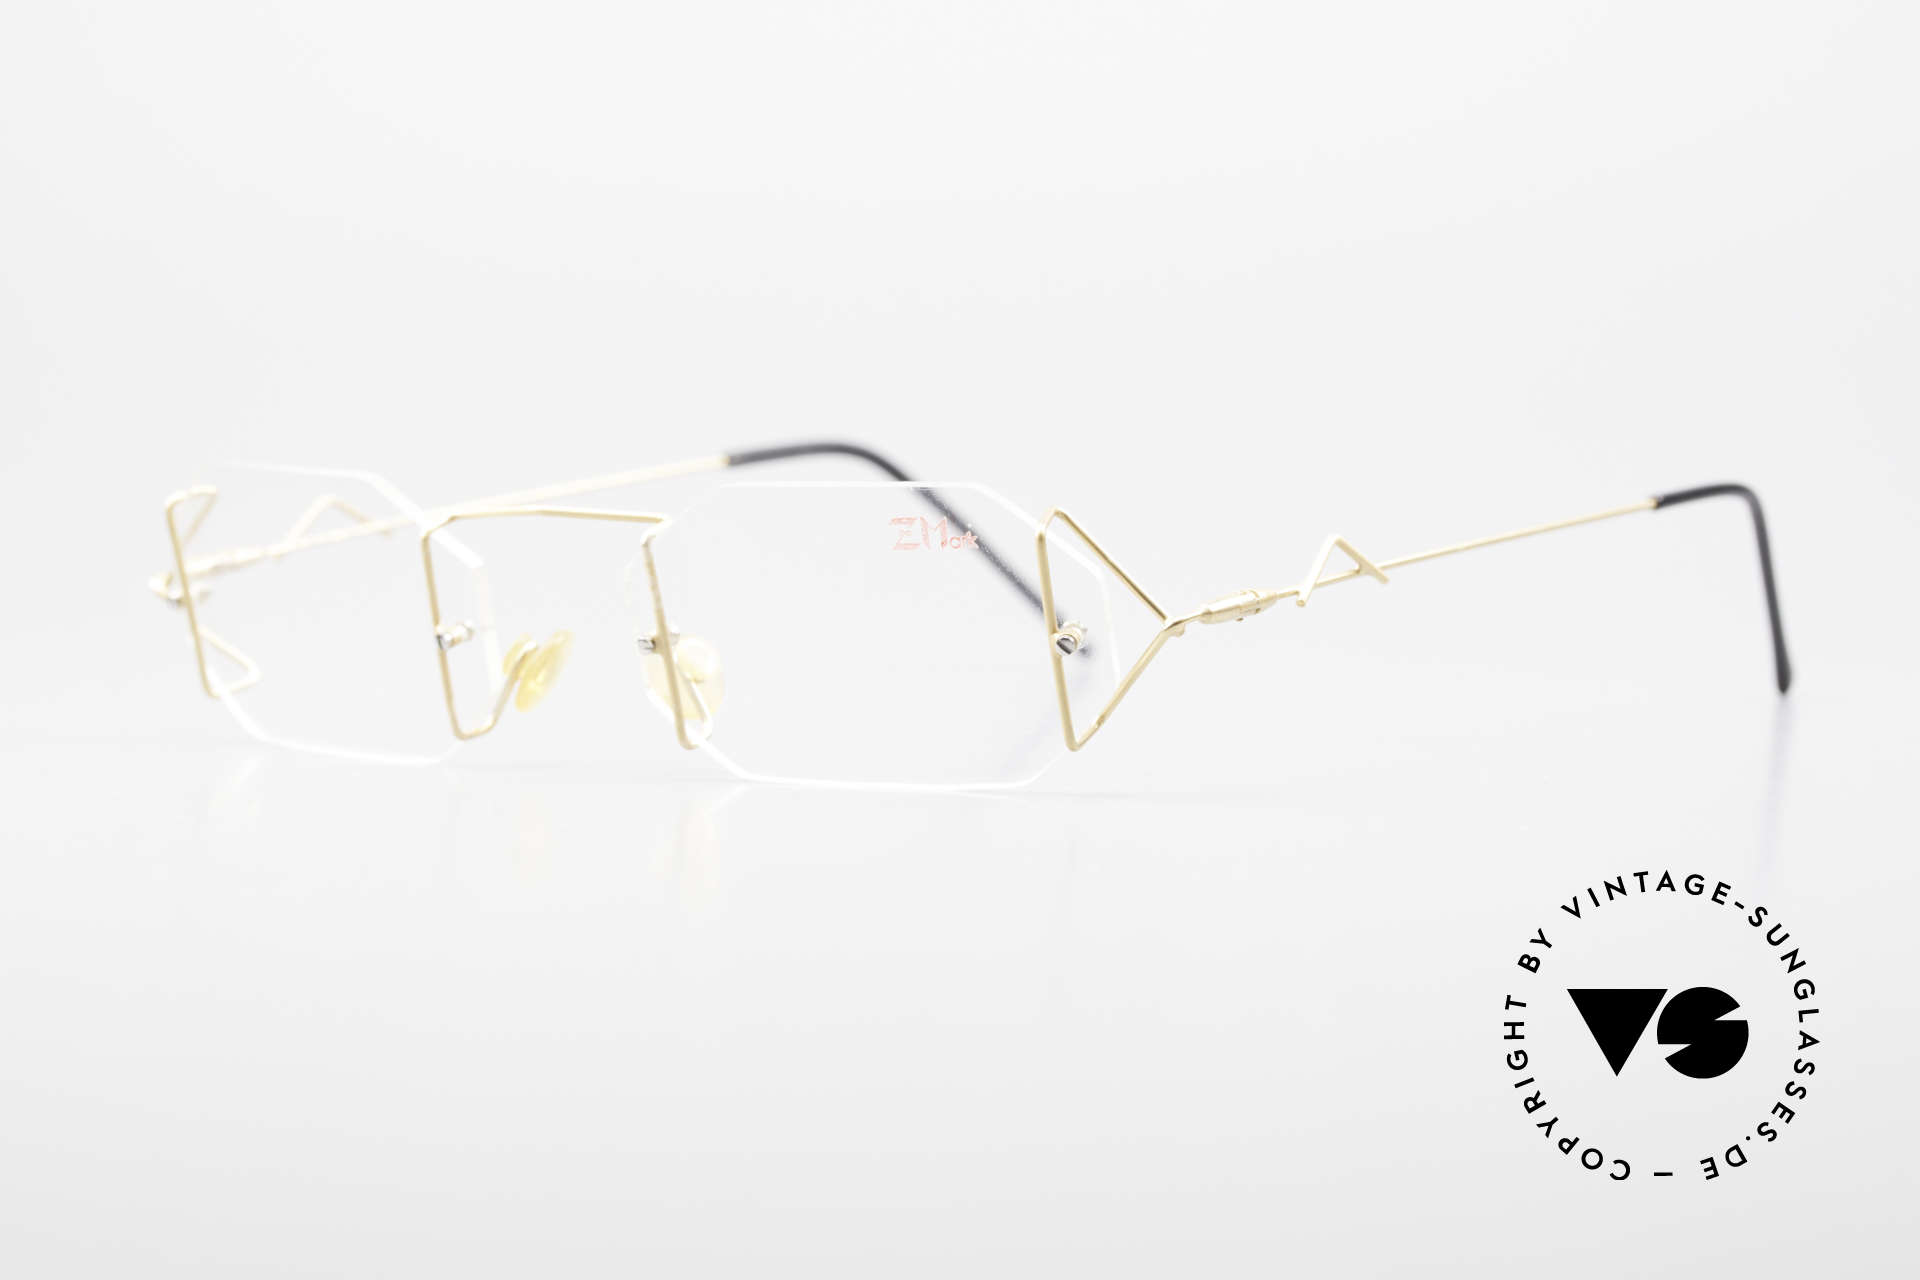 Z Mark 9 Kunstvolle Bohrbrille 90er, Fassung in 'klassisch' gold mit silbernen Schrauben, Passend für Herren und Damen